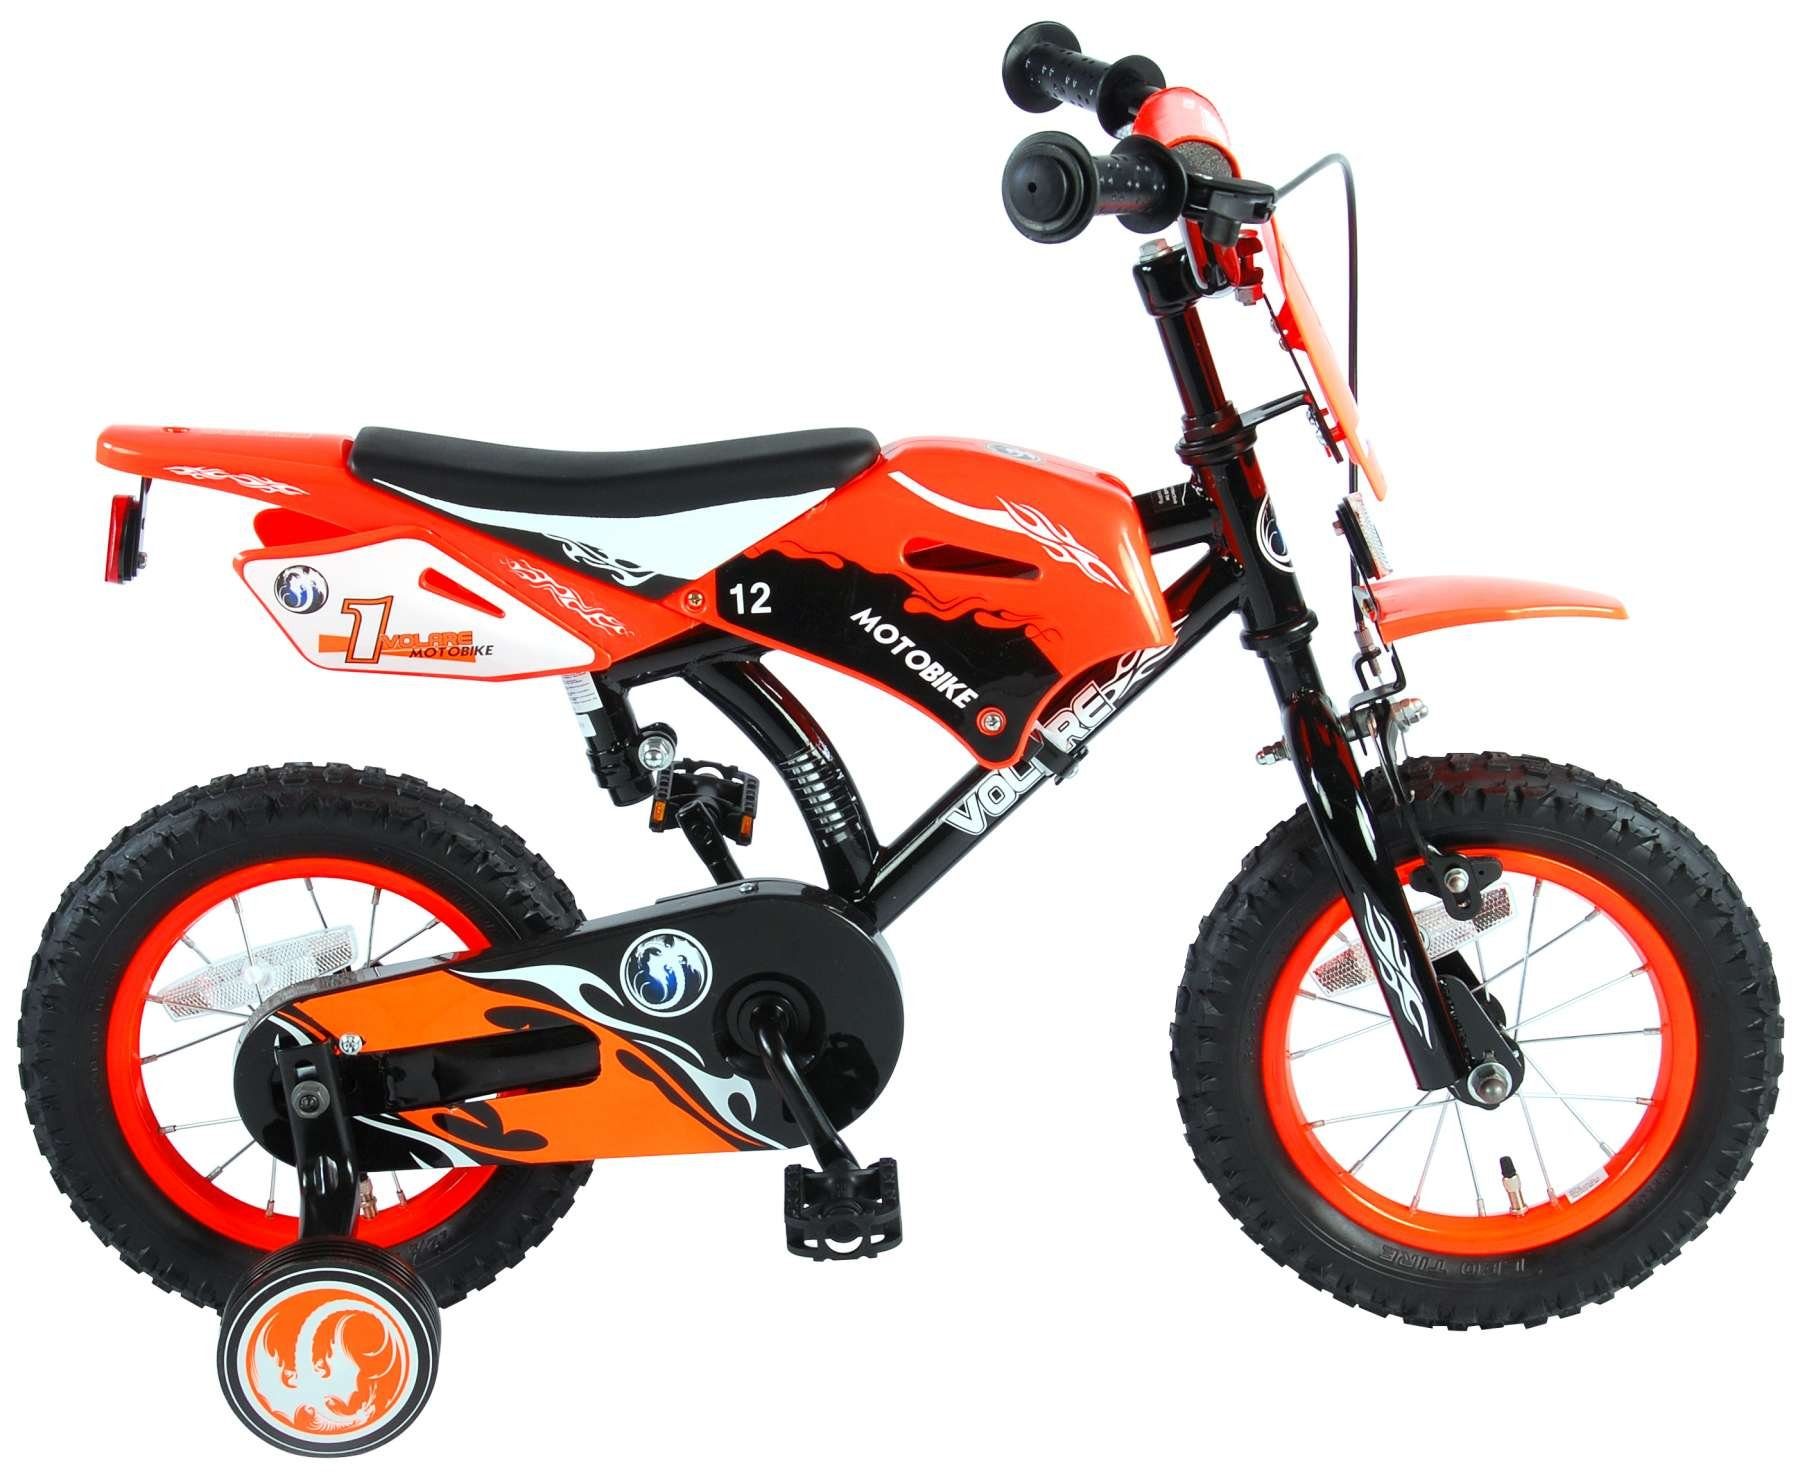 Zum günstigen Preis erhalten! LeNoSa Kinderfahrrad Cross 12 & Orange + Motorrad Rücktrittbremse) Orange Kinder Jungen-Mädchen-Fahrrad für (1x Zoll-Grün Hand